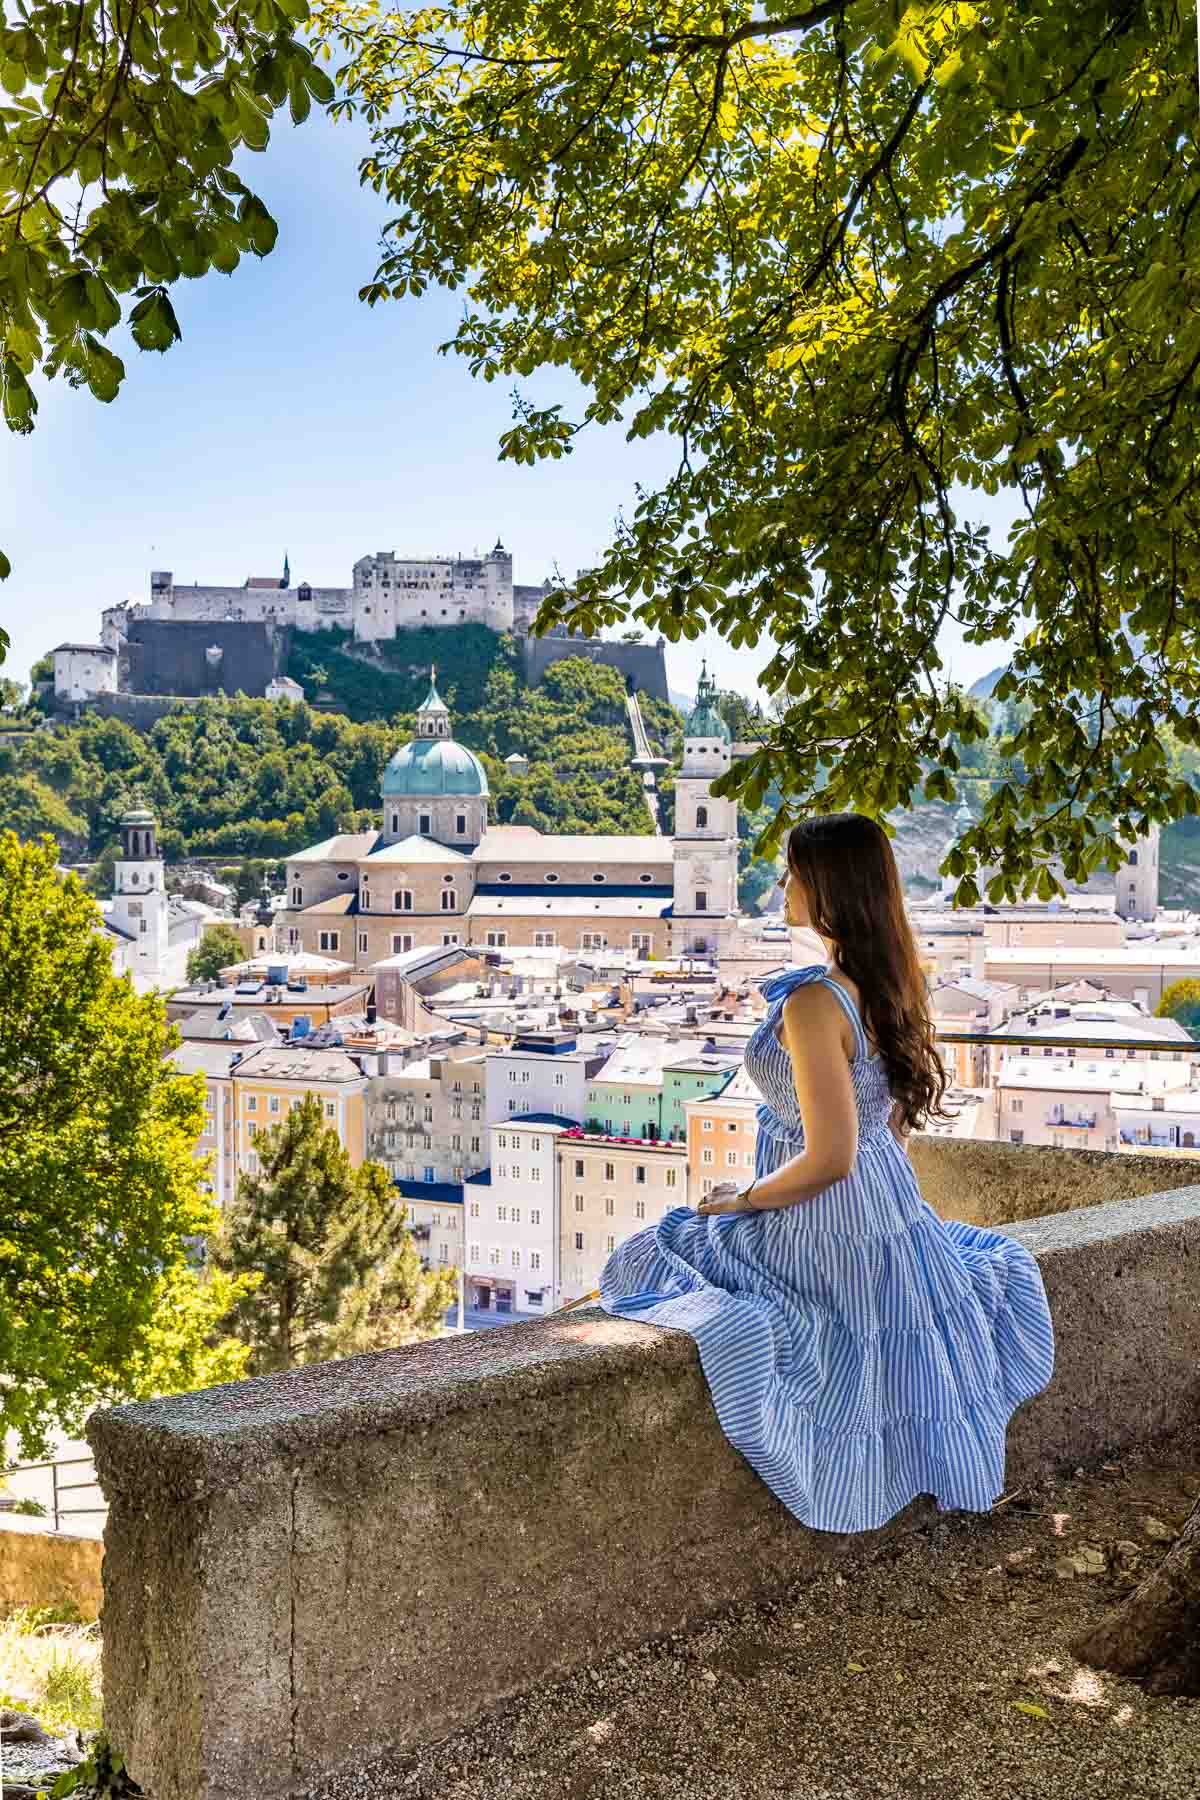 Panoramisch uitzicht over Salzburg van de Kapuzinerkloster uitkijkpunt met een meisje in een blauwe jurk